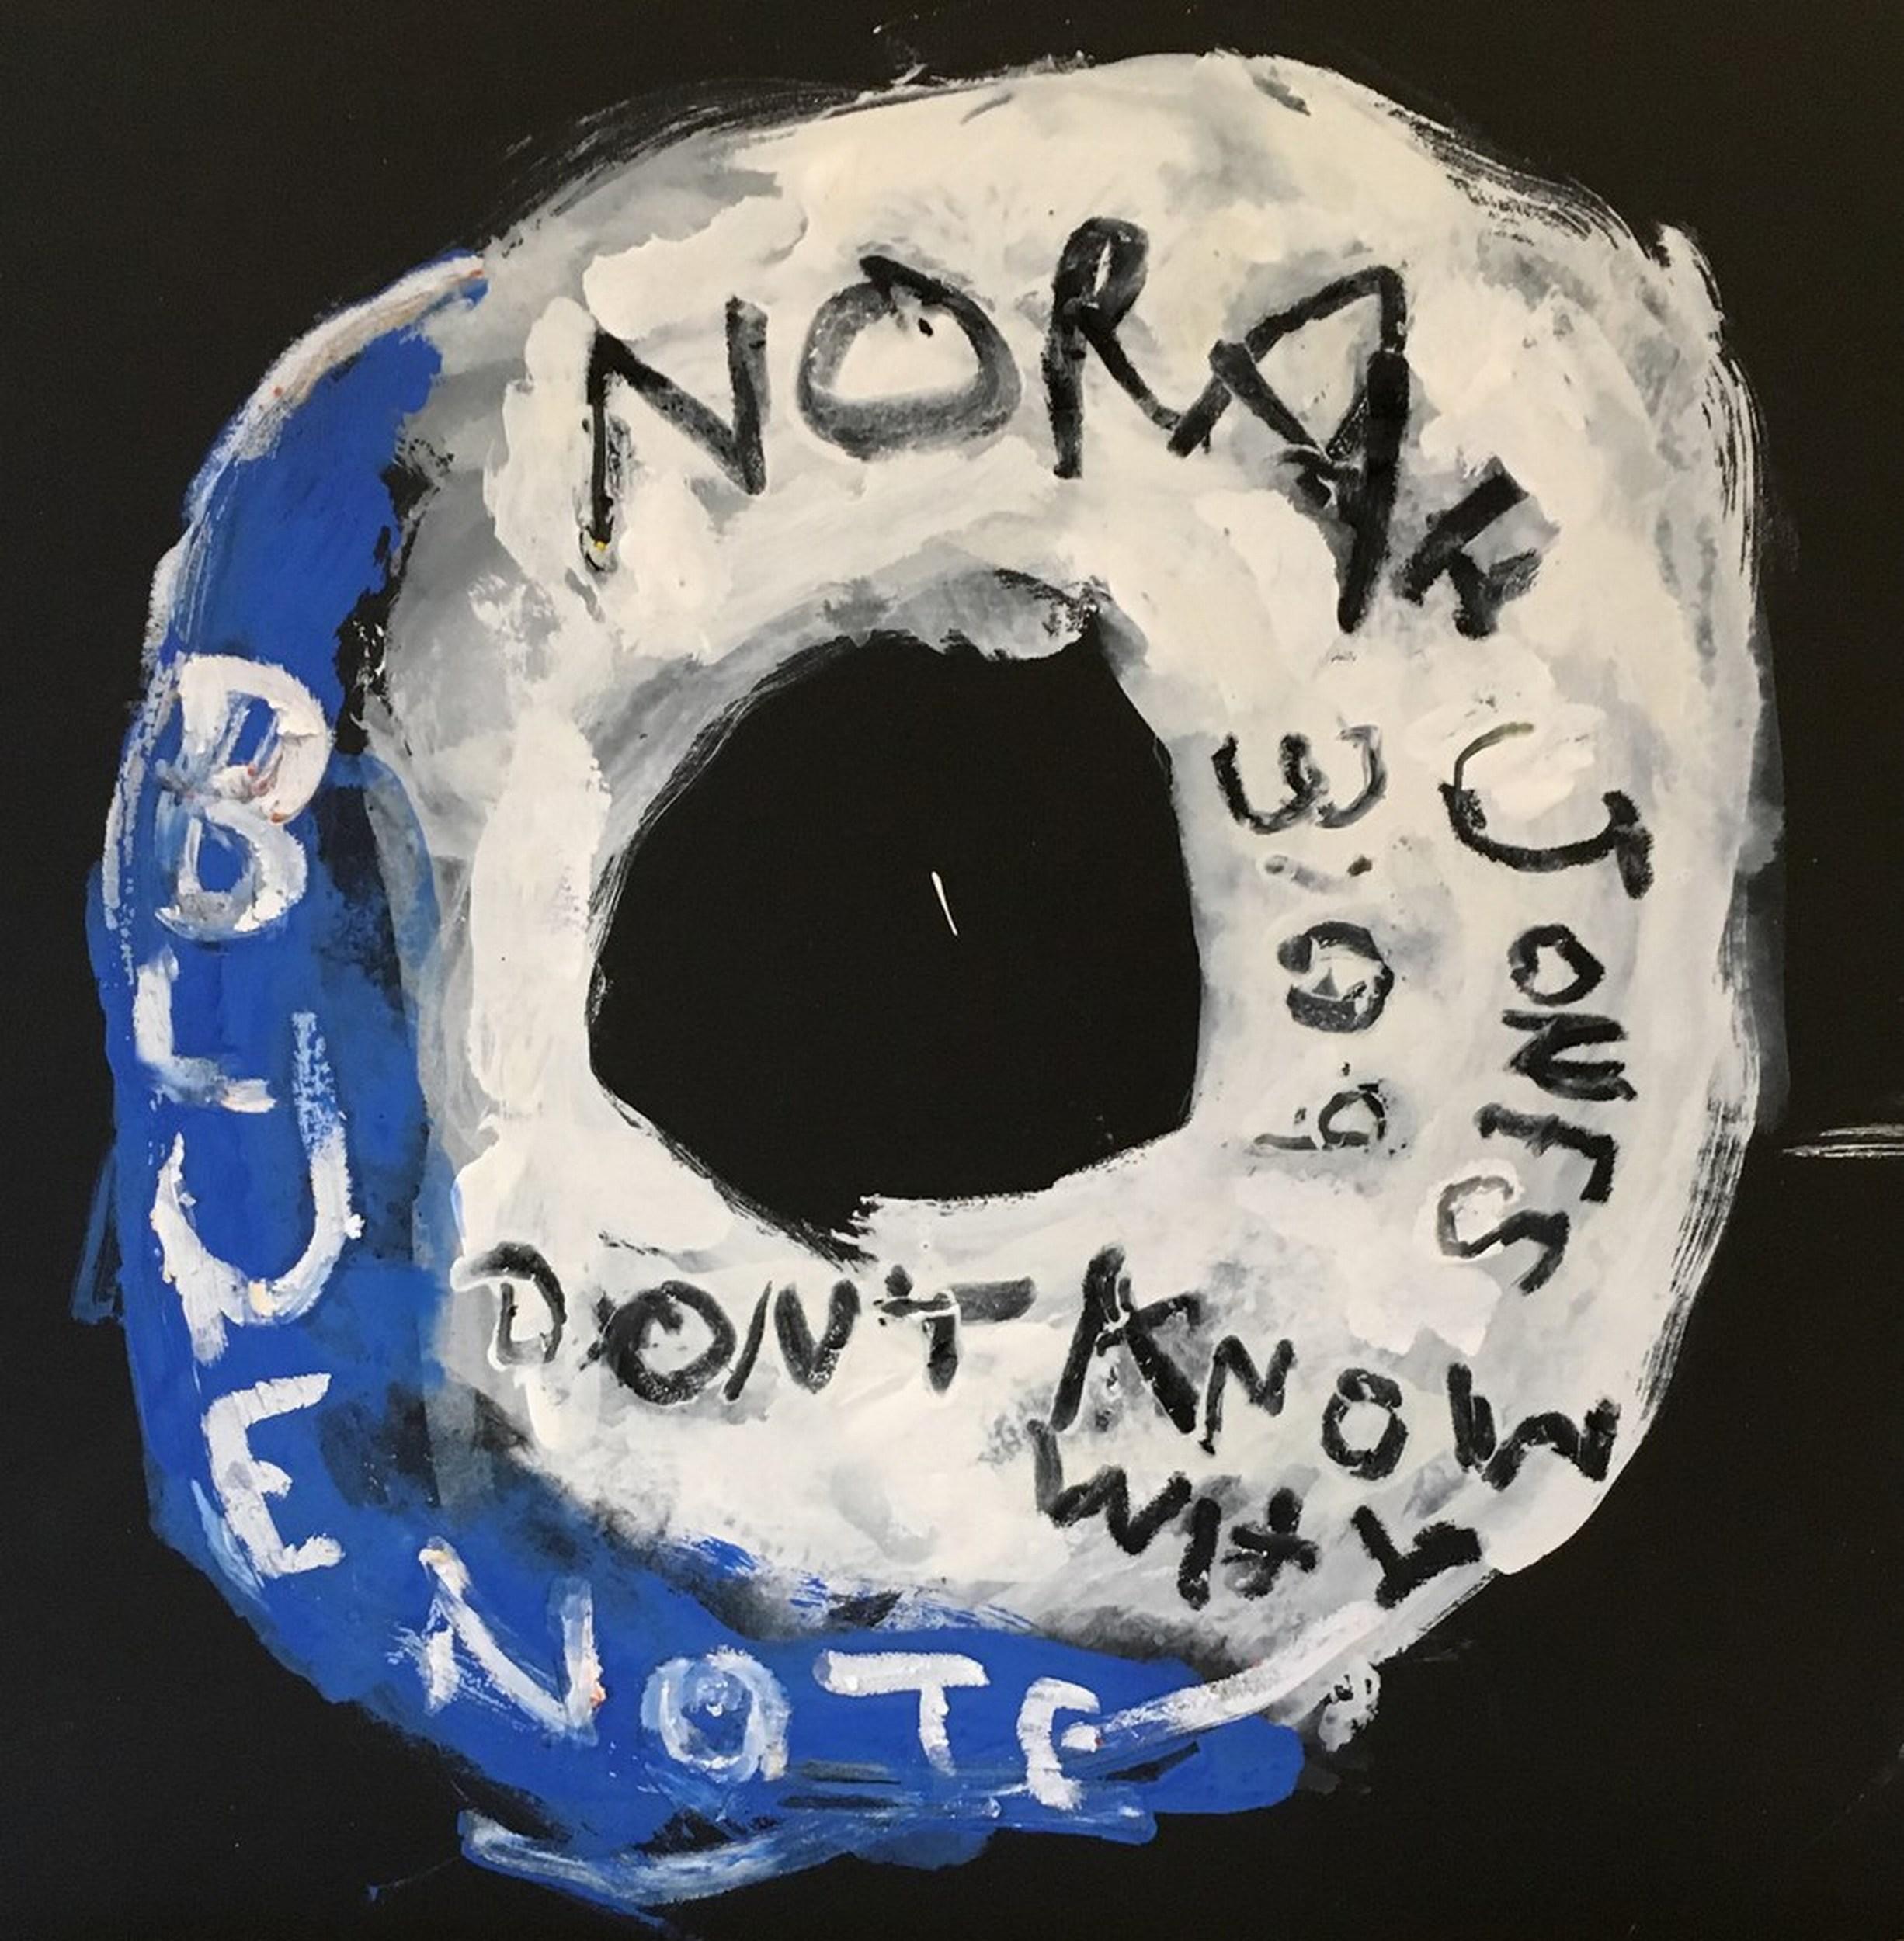 Norah Jones - Don't Know Why (Étiquette, talons de billets, listes de concerts, Pop Art)